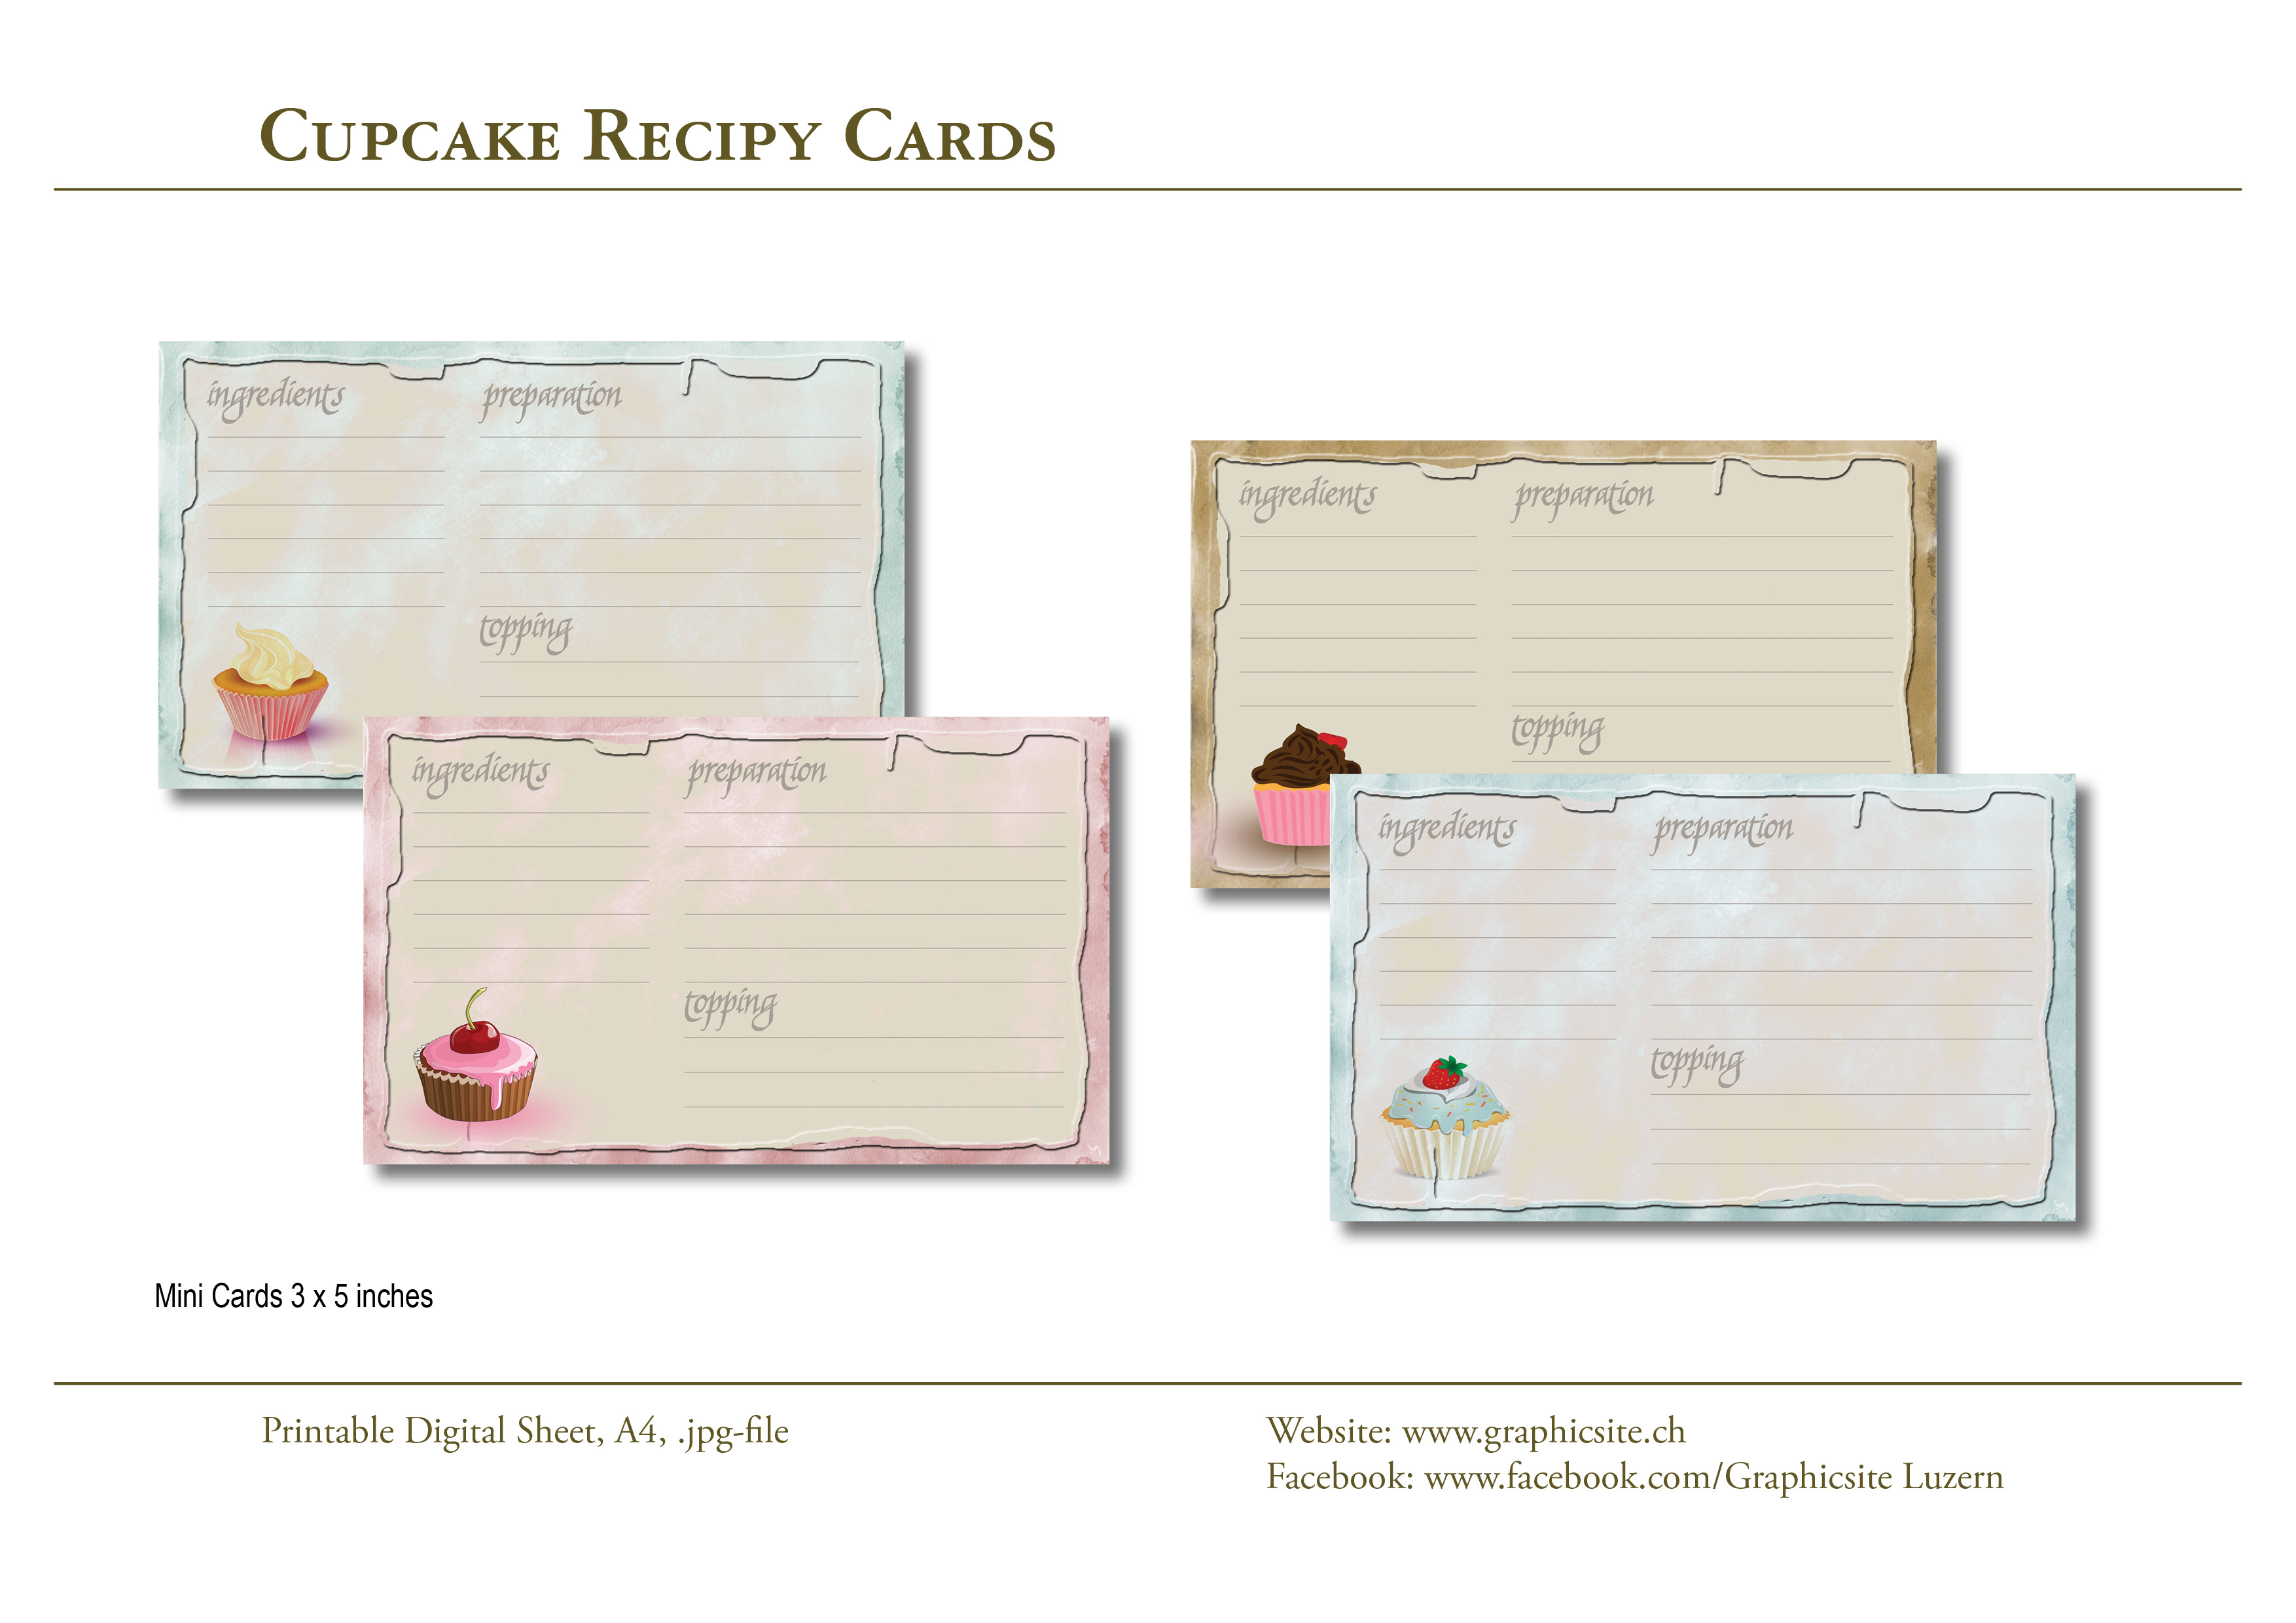 Karten selber drucken - 3 x 5 Bilder - Cupcakes Rezepte, #dessert, #rezepte, #karten, #basteln, #drucken,